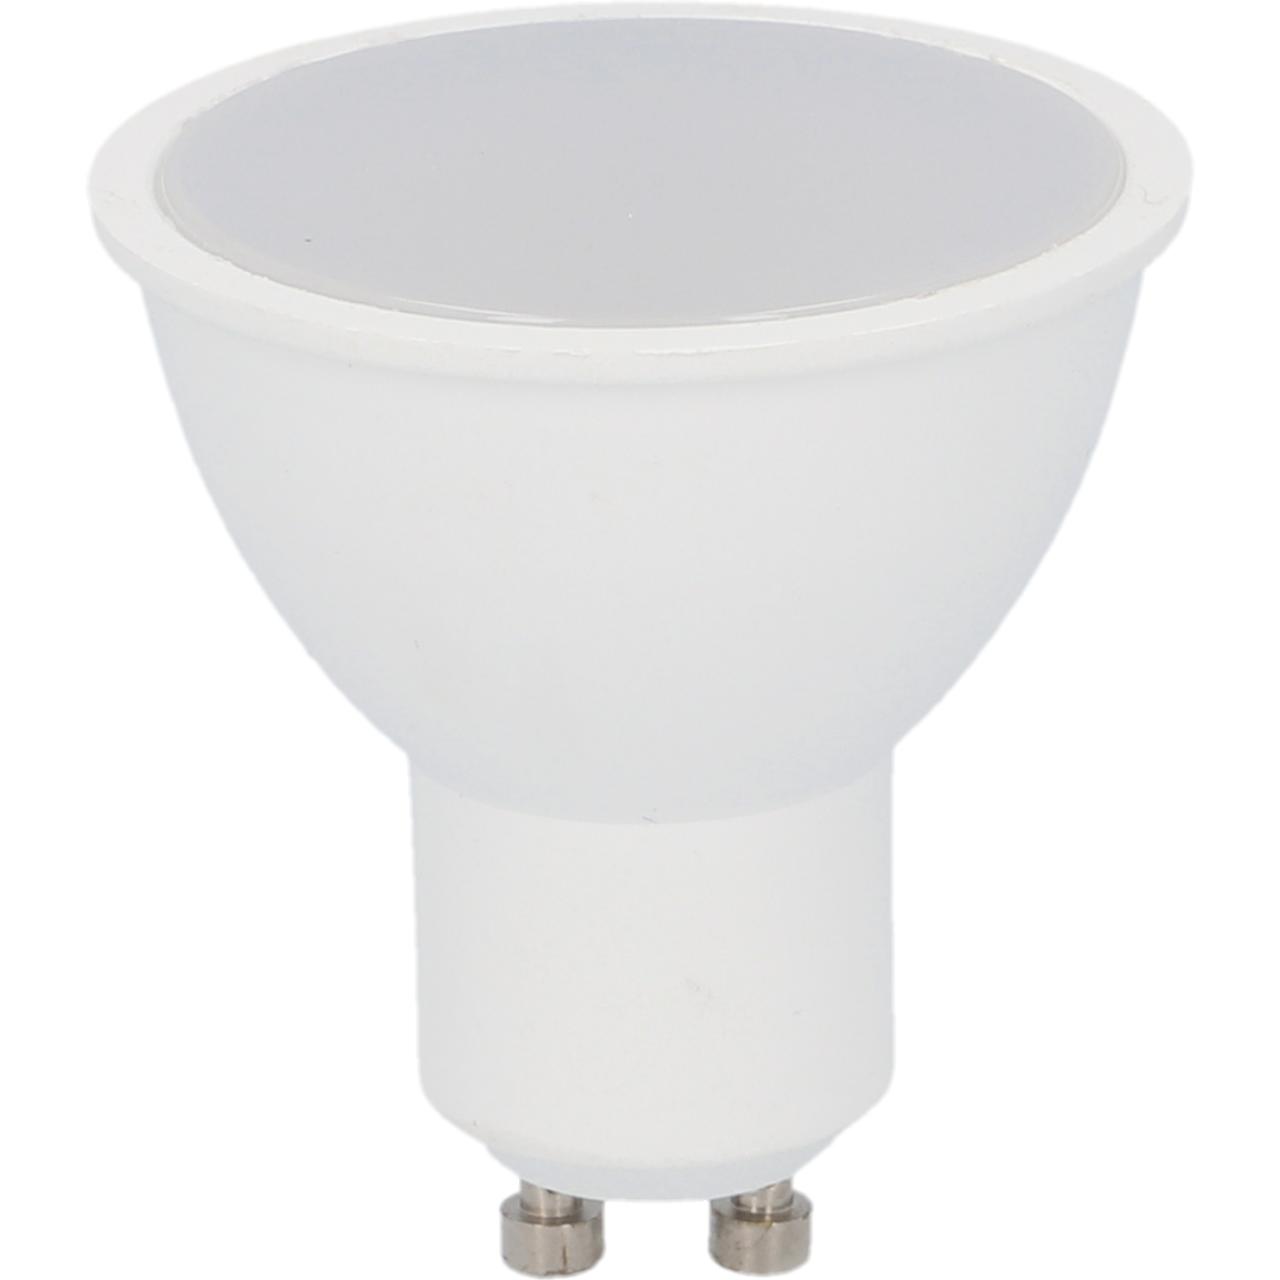 uniTEC WIFI LED Lampe GU10, 3,5 W, 260 lm, RGB Farbwechsel, dimmbar